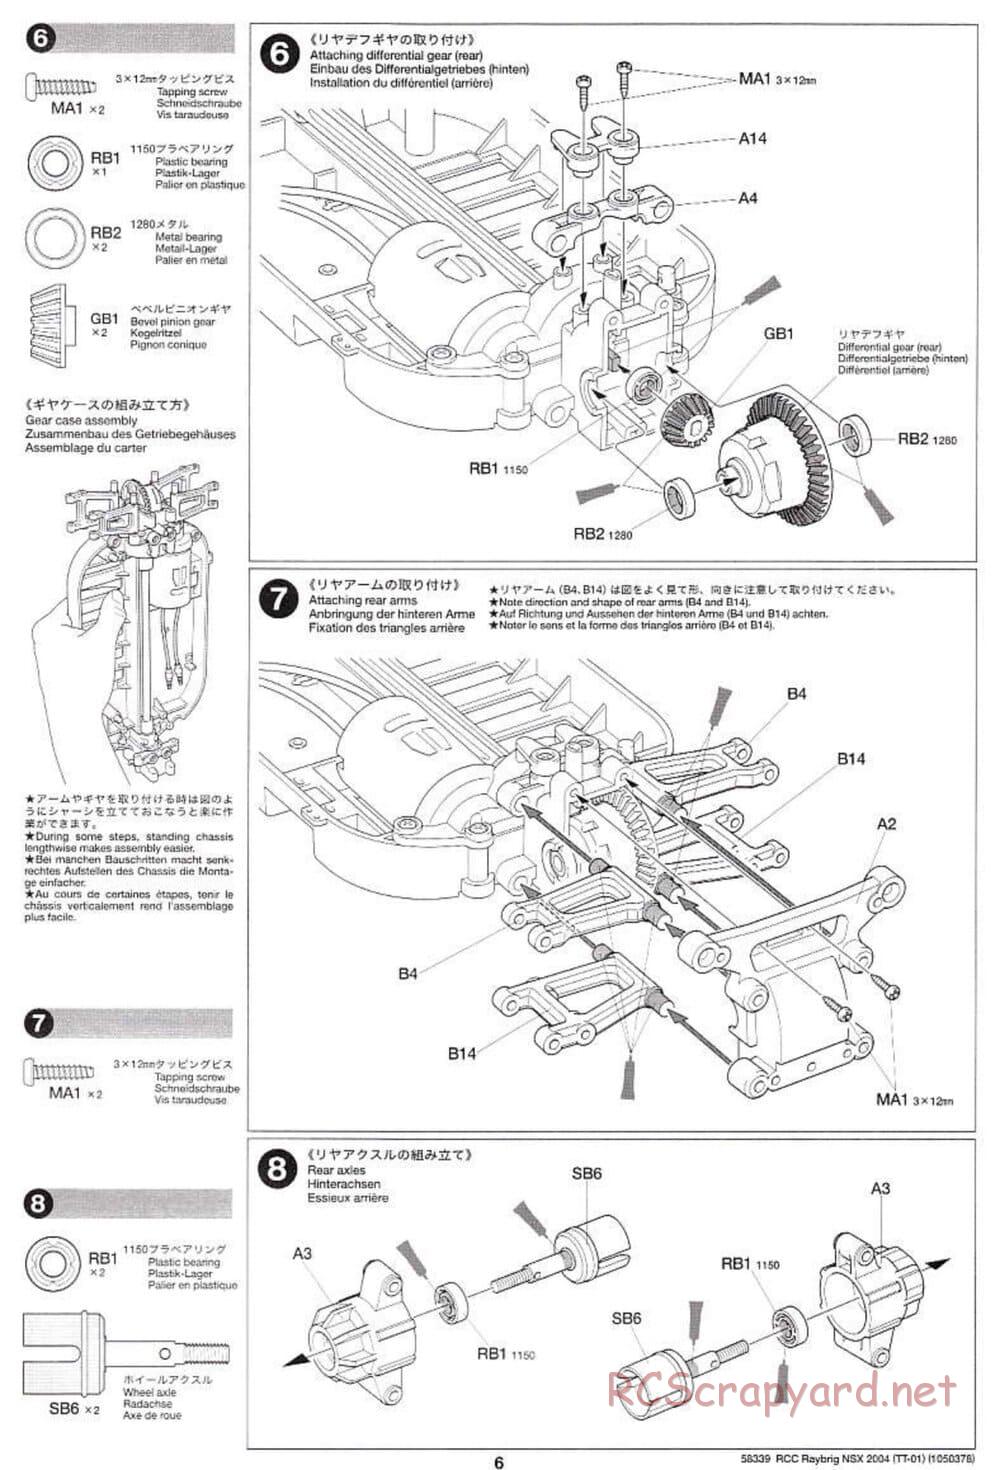 Tamiya - Raybrig NSX 2004 Chassis - Manual - Page 6